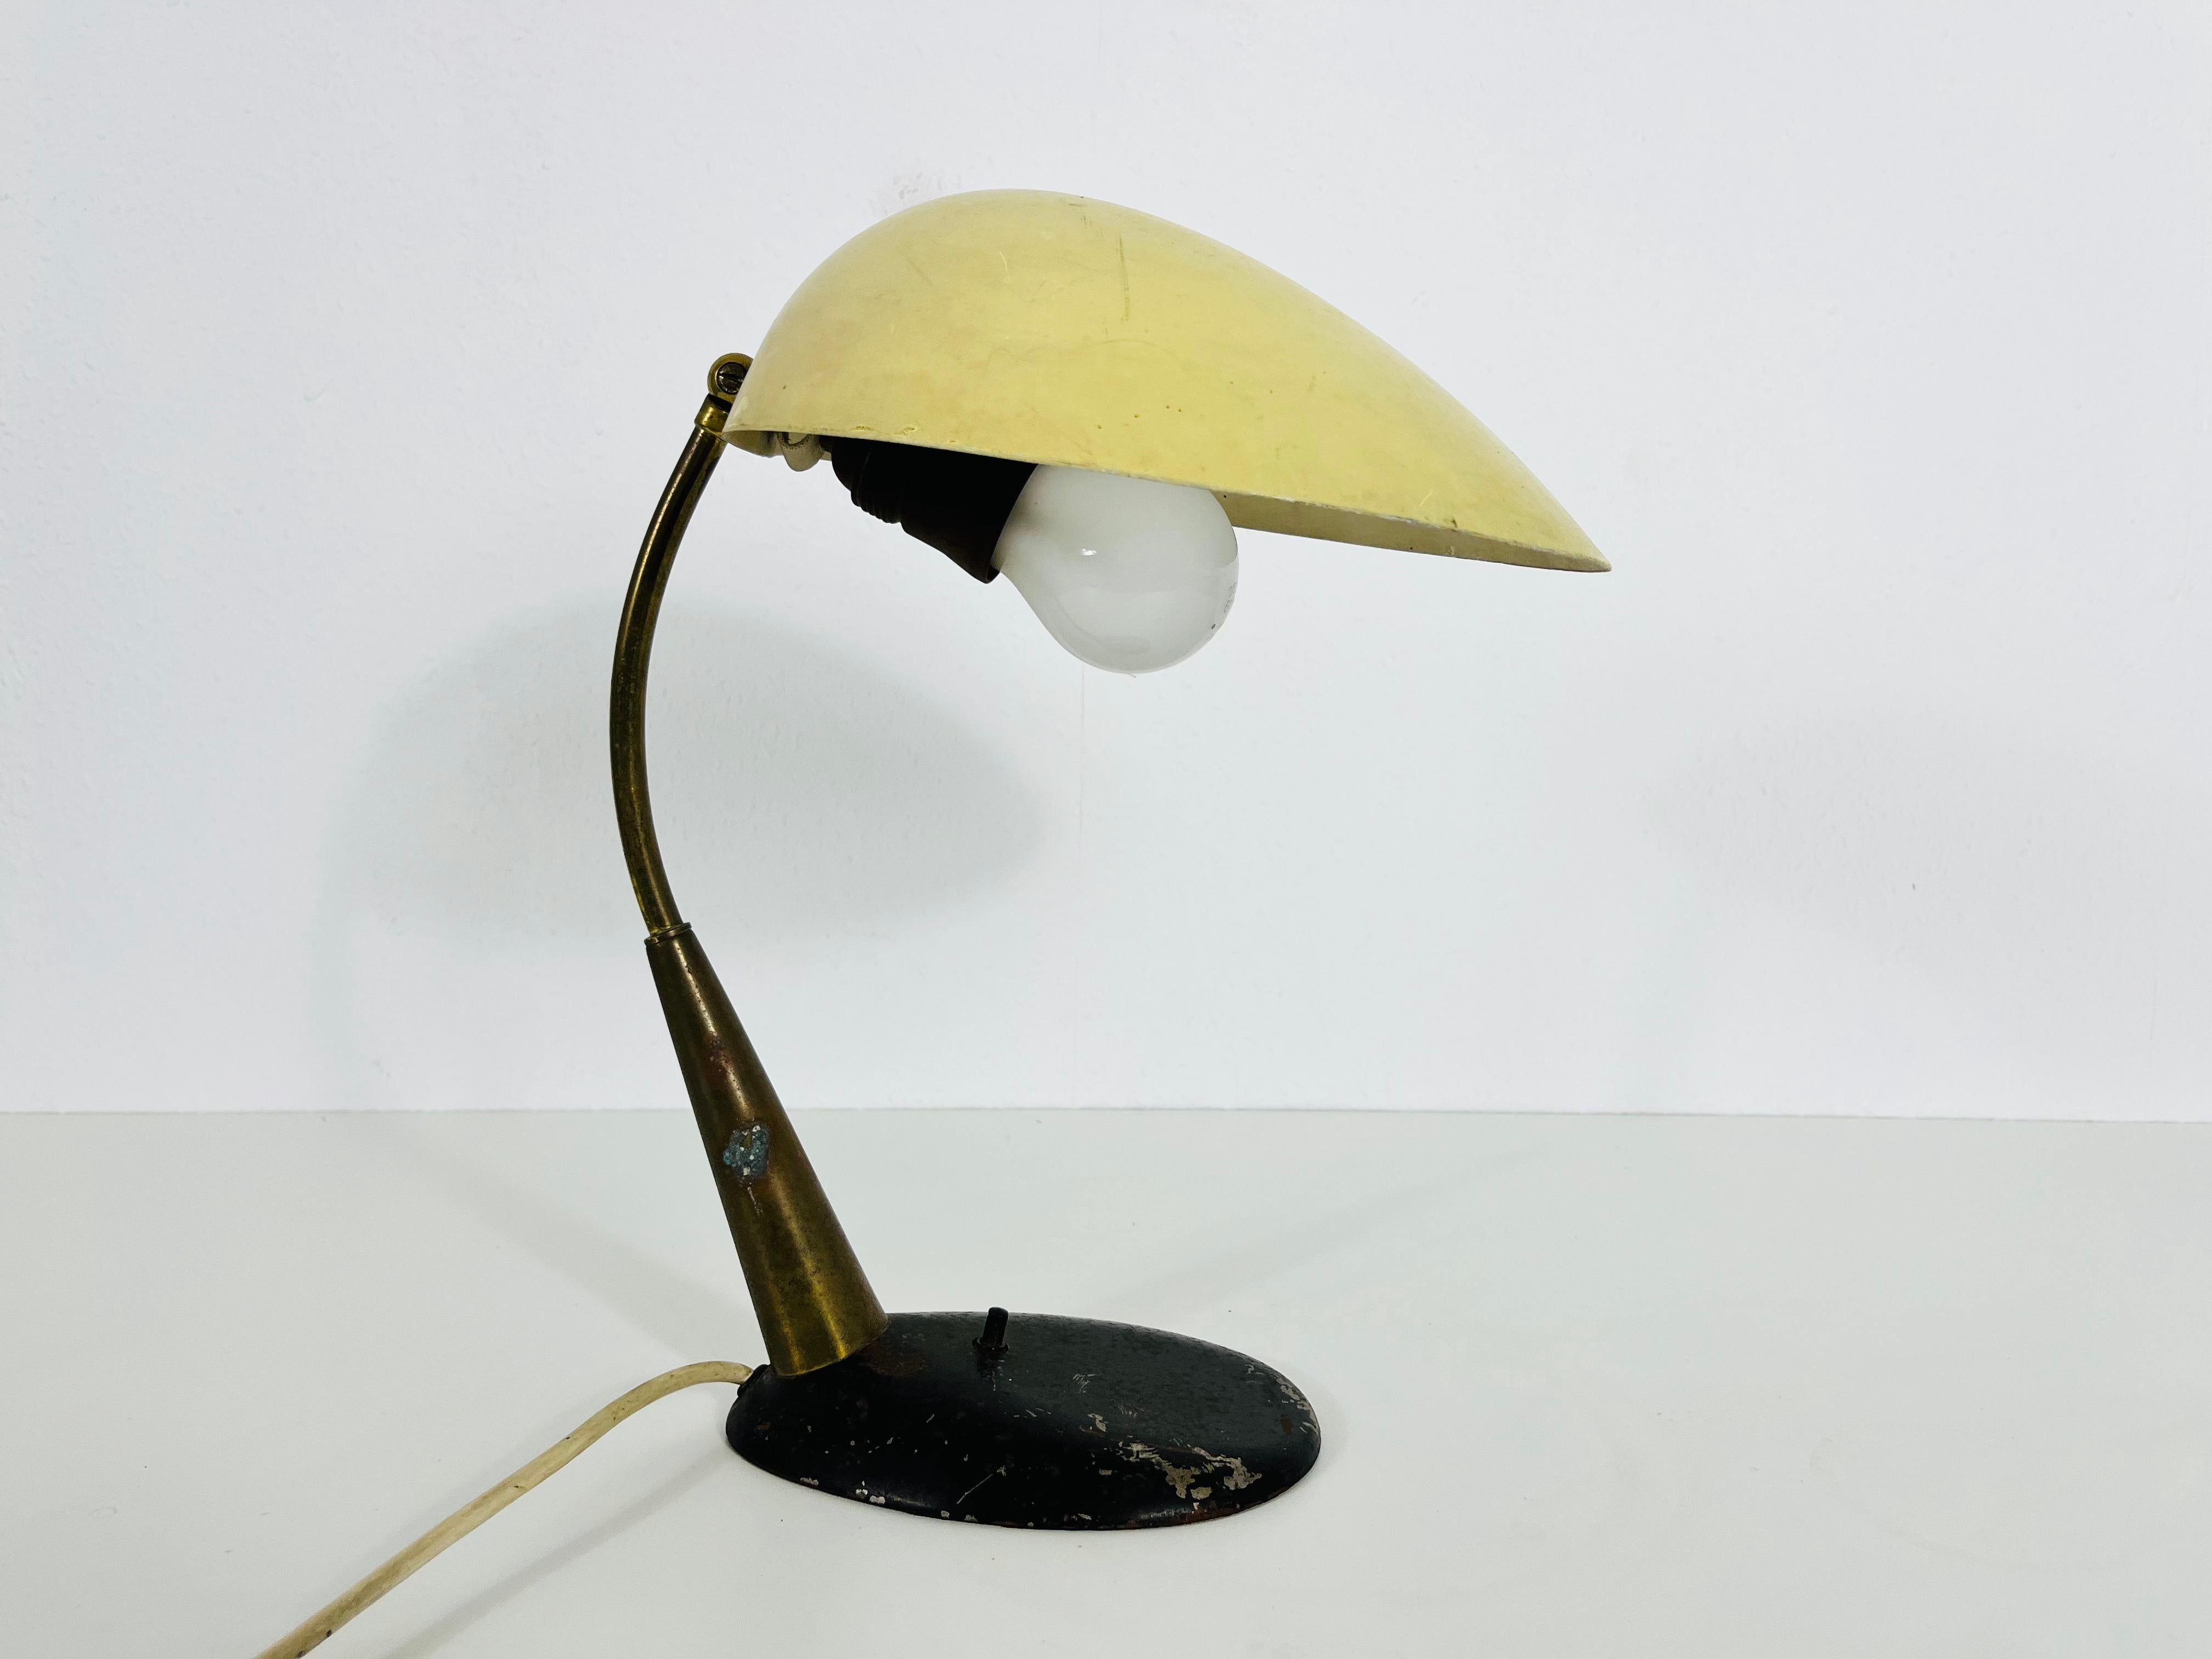 Une lampe de table italienne fabriquée dans les années 1960. L'éclairage a un design exceptionnel.

La lampe nécessite une ampoule E27 (US E26). Fonctionne avec les deux 120/220V. Bon état vintage.

Expédition express gratuite dans le monde